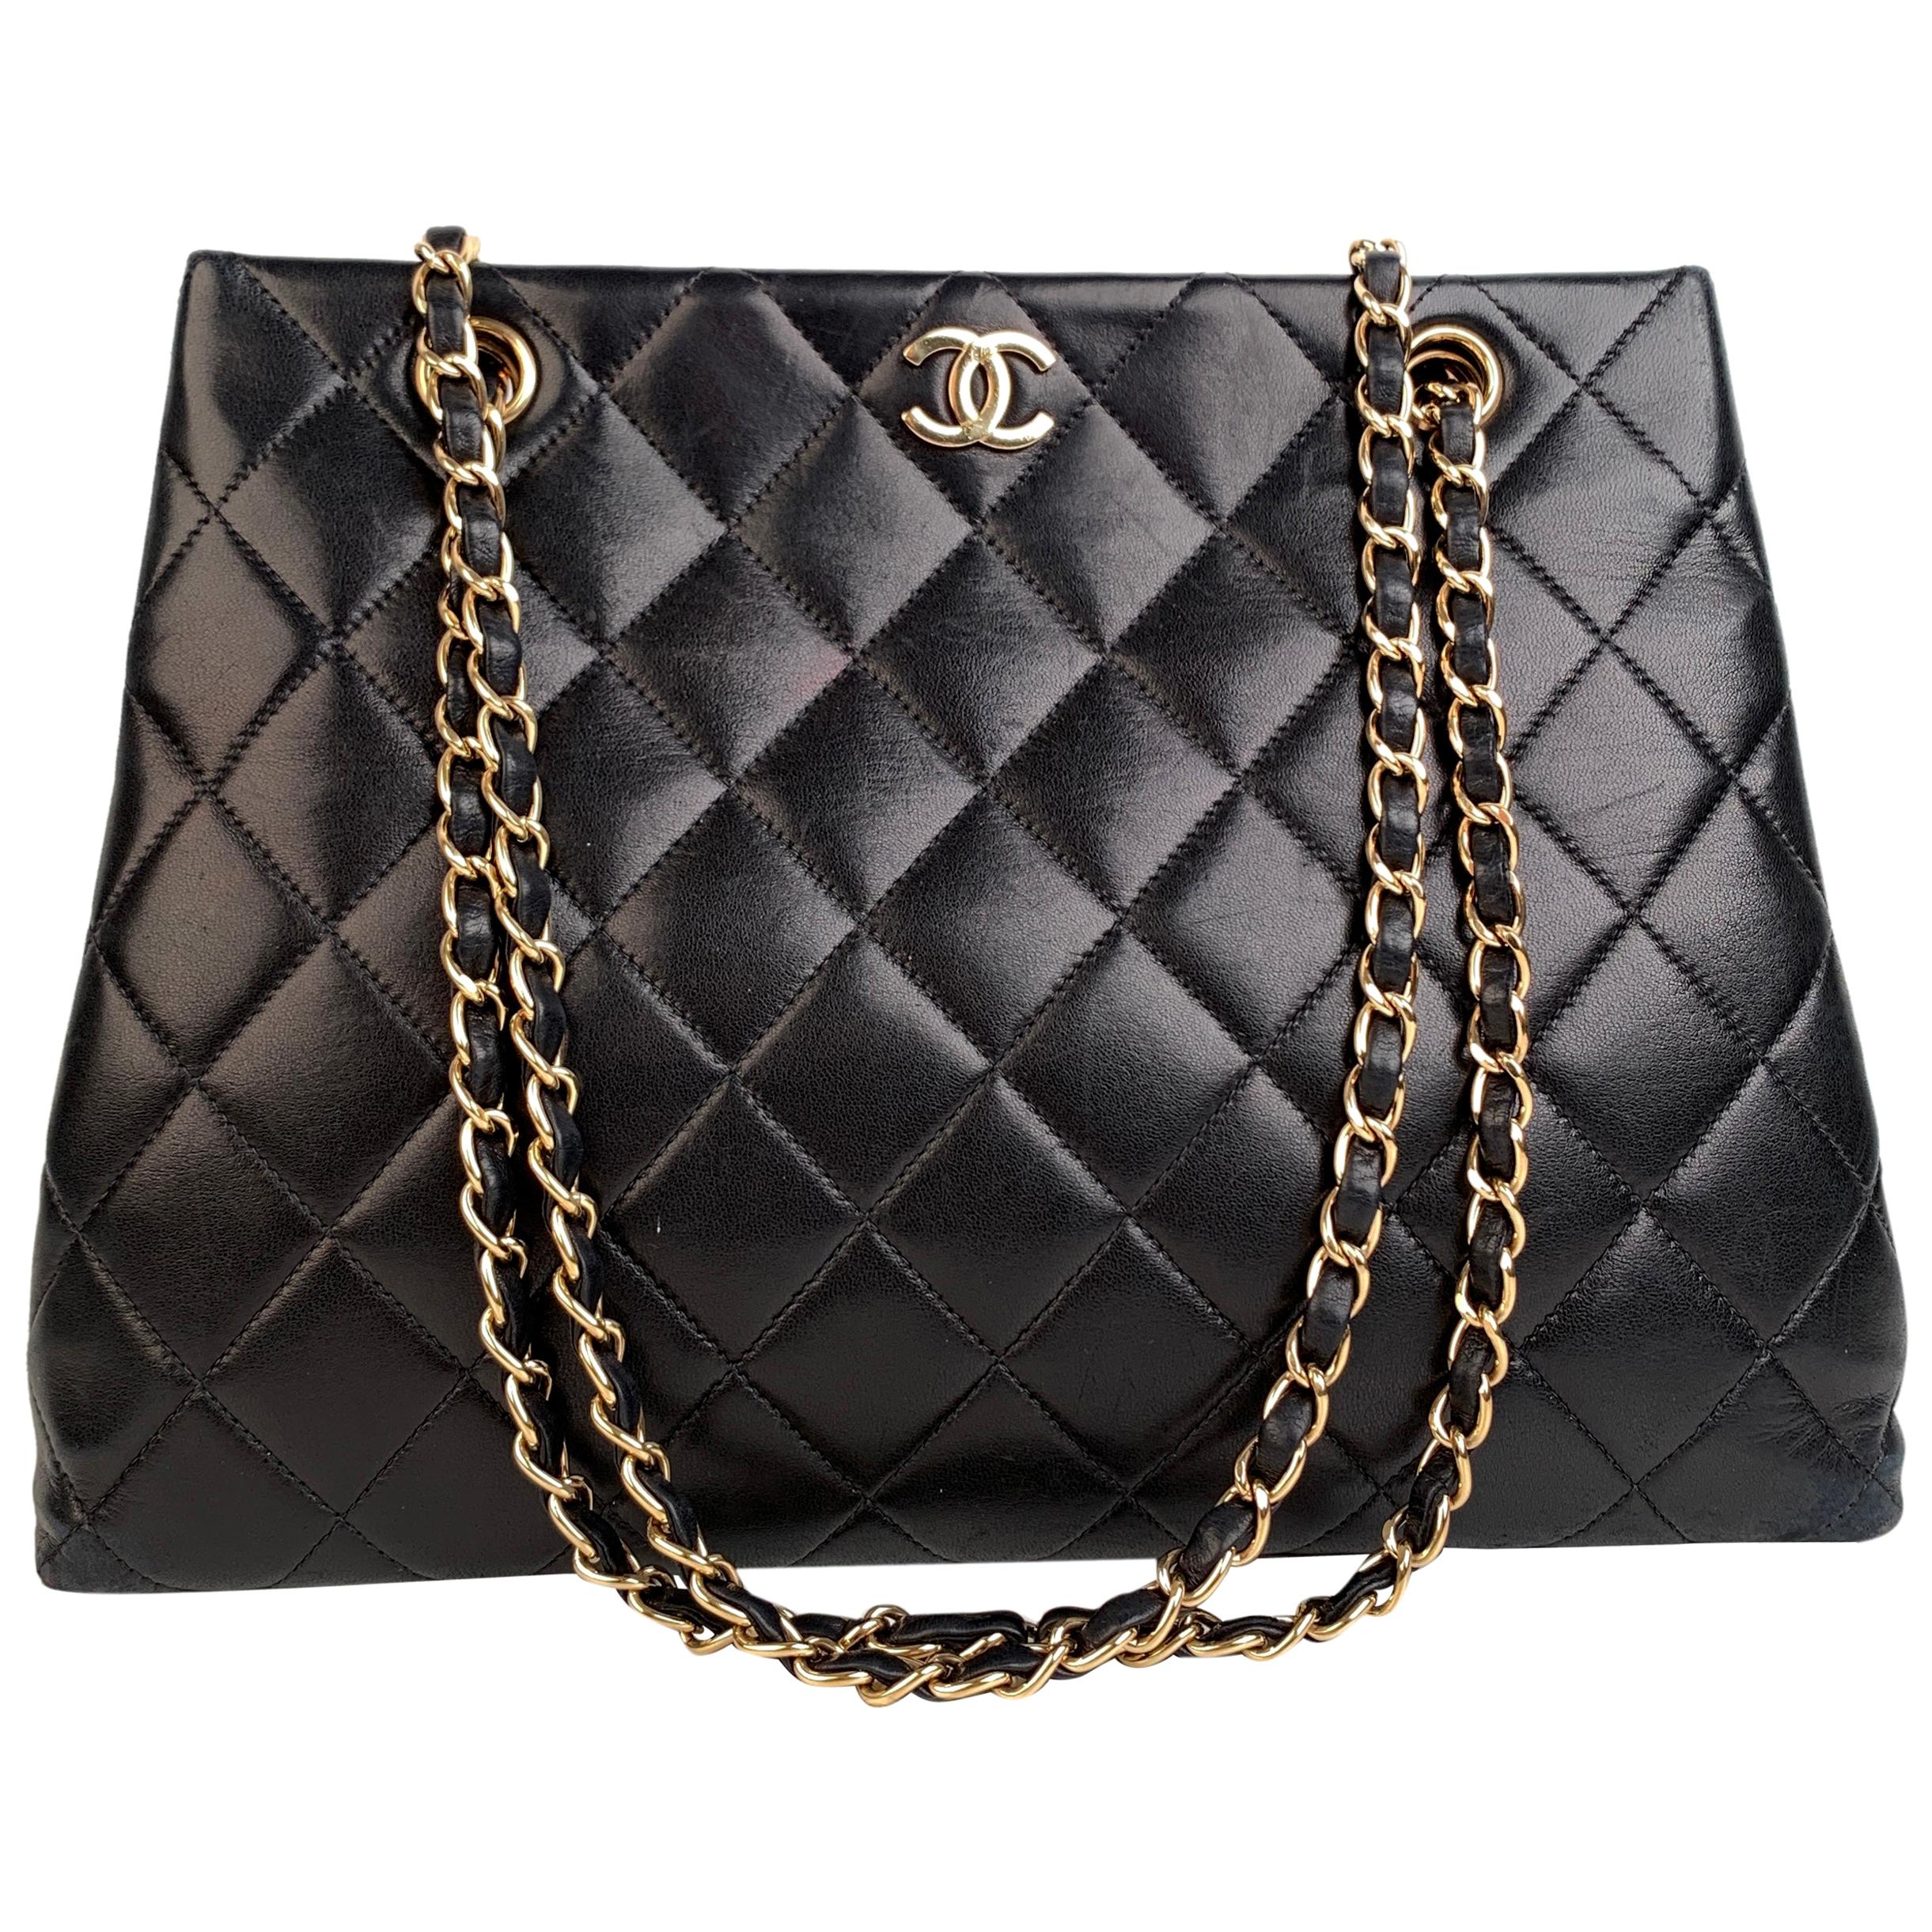 Chanel Vintage Black Quilted Leather Tote Shoulder Bag